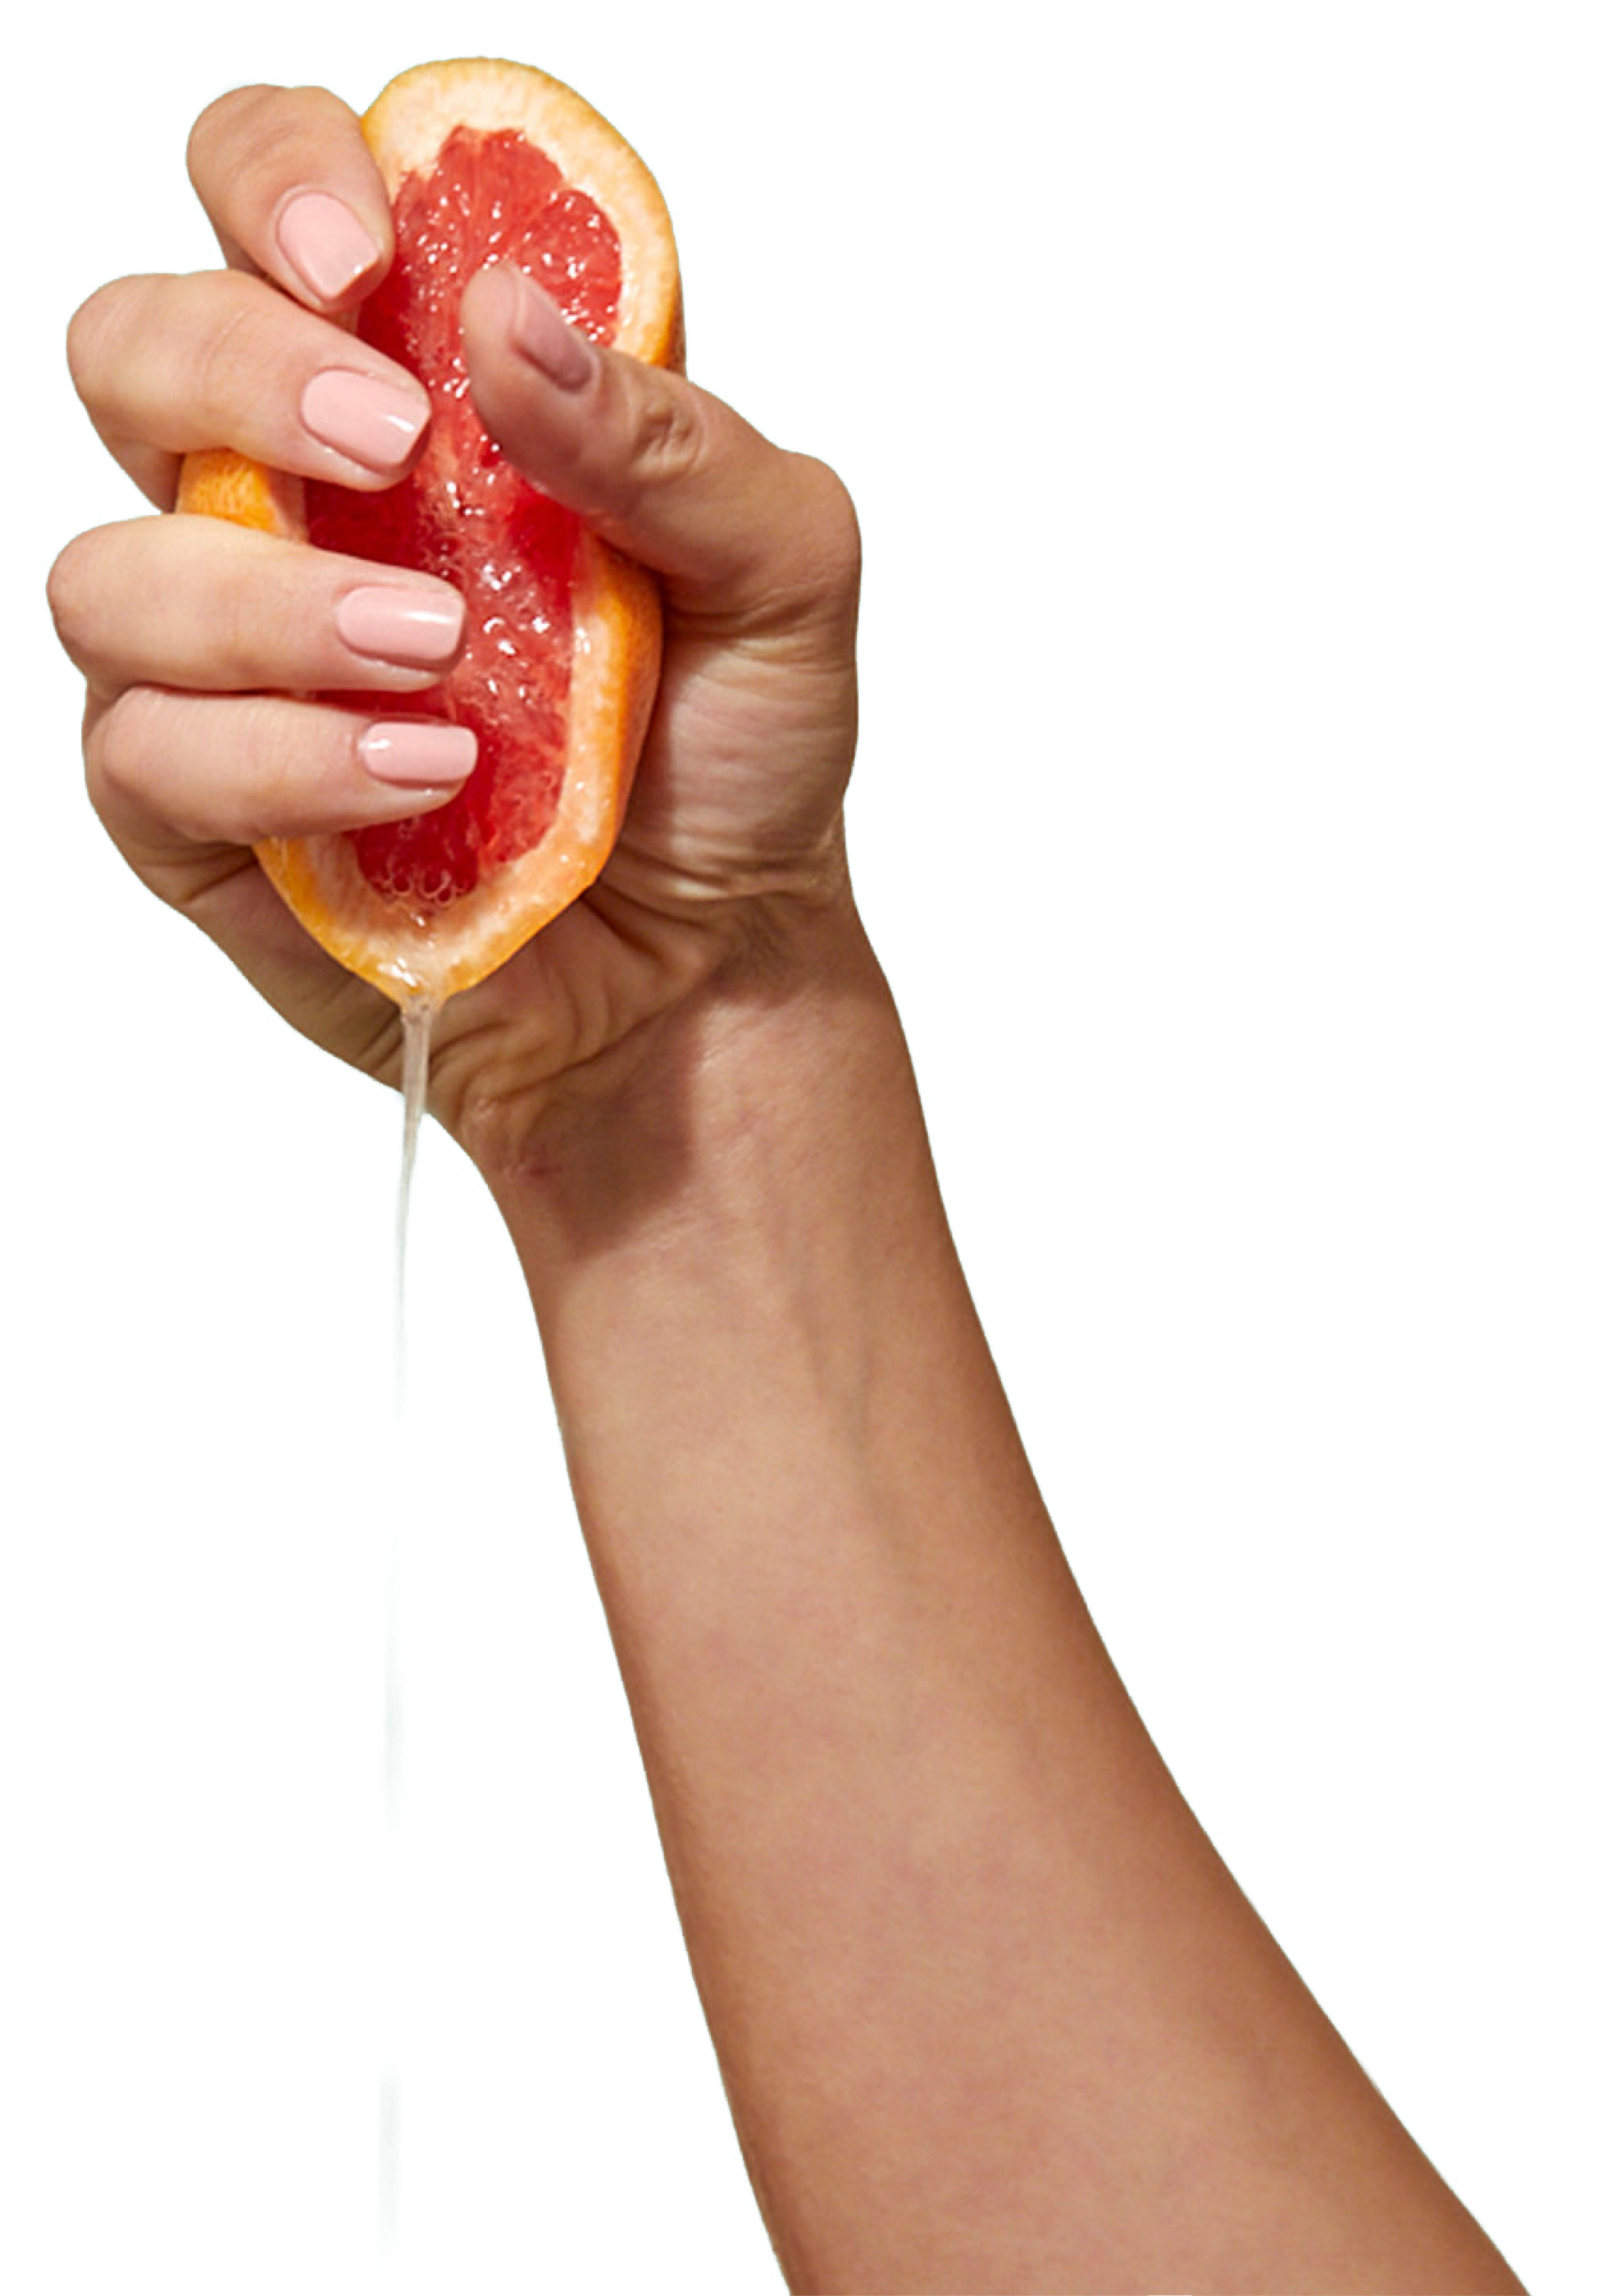 CARE halbe Grapefruit wird in einer Hand ausgepresst